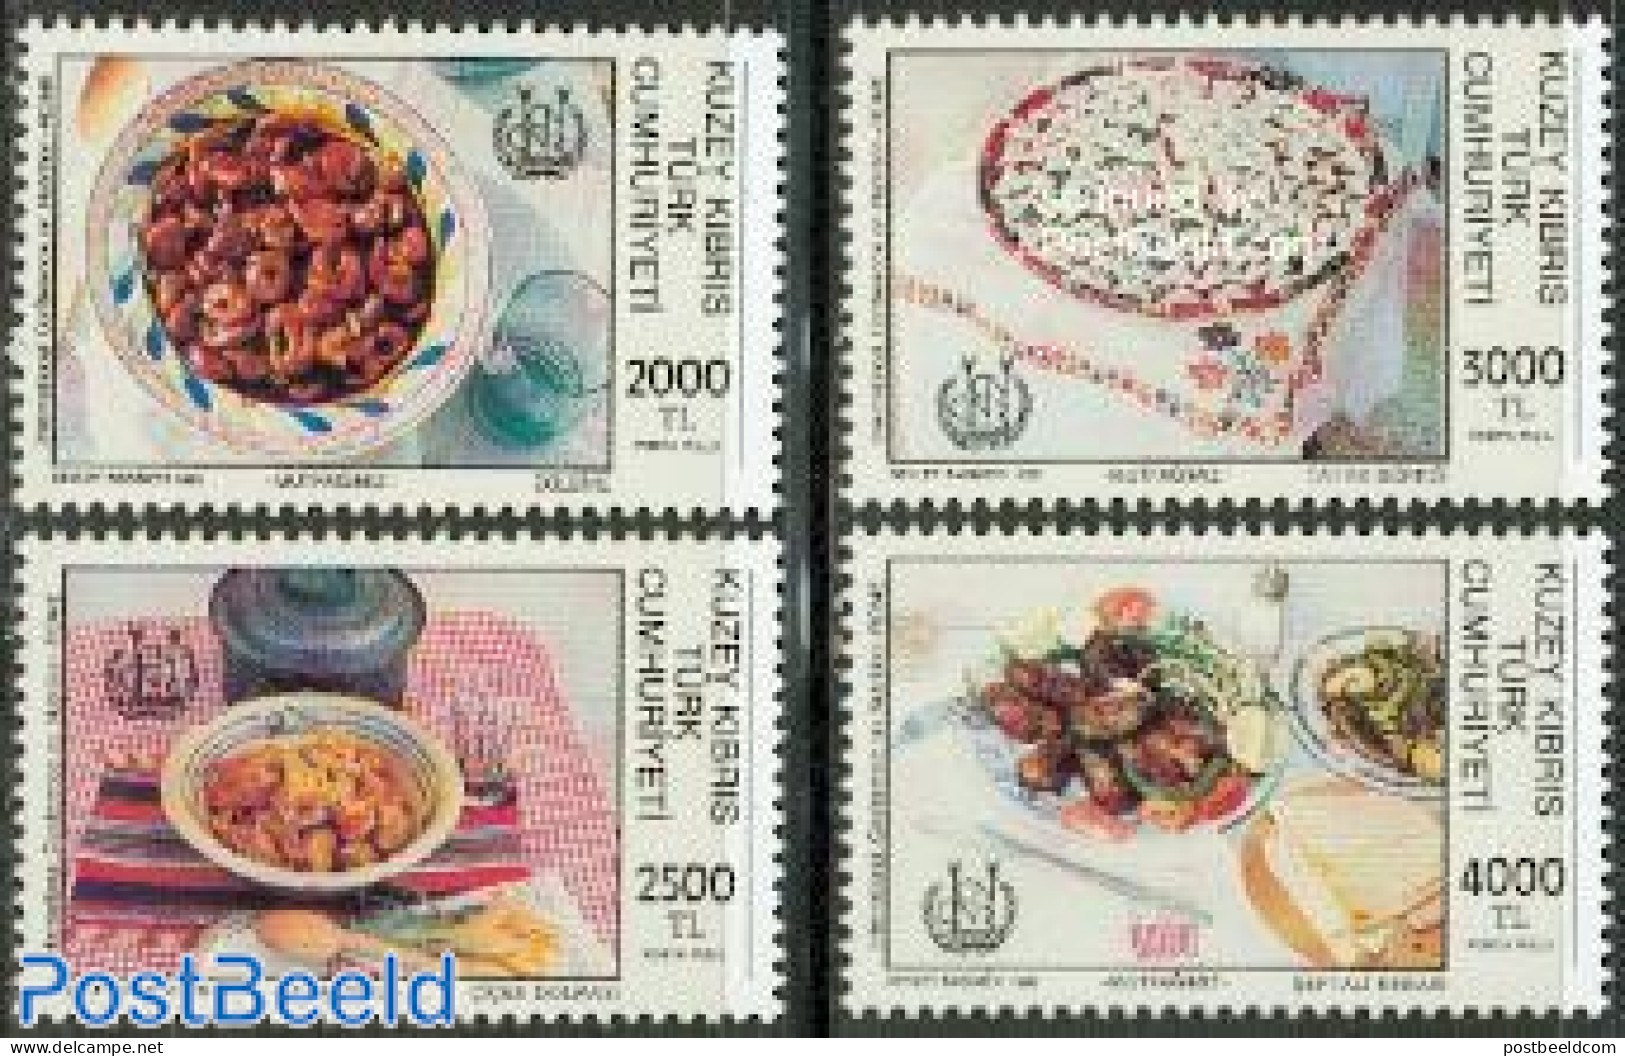 Turkish Cyprus 1992 Food 4v, Mint NH, Health - Food & Drink - Levensmiddelen